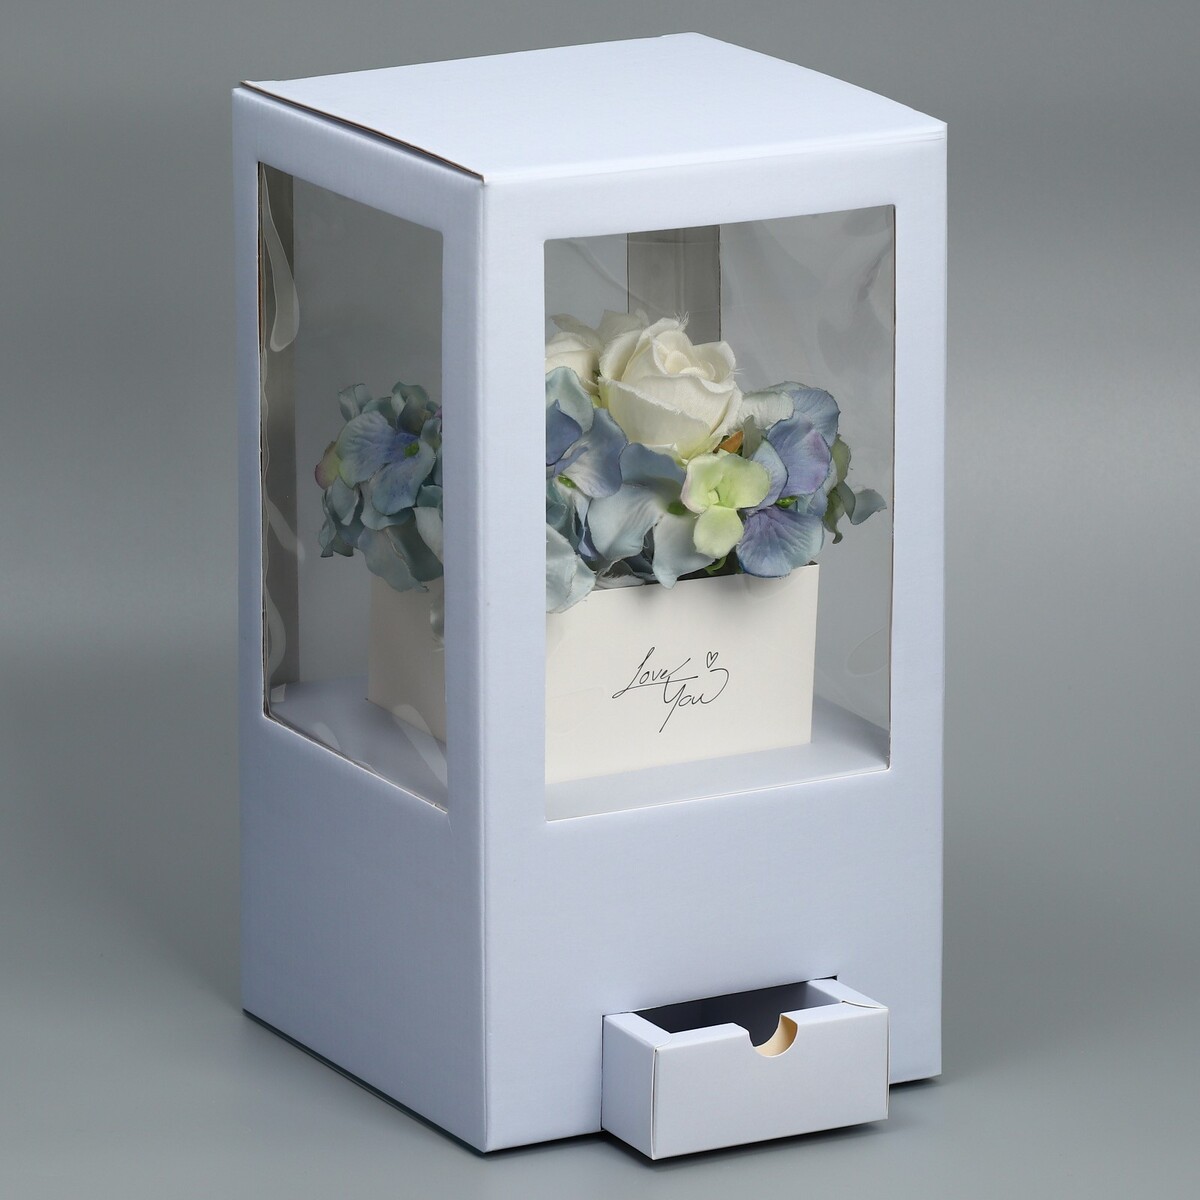 Коробка подарочная для цветов с вазой из мгк складная, упаковка, коробка для ов с вазой и pvc окнами складная красный 23 х 30 х 23 см